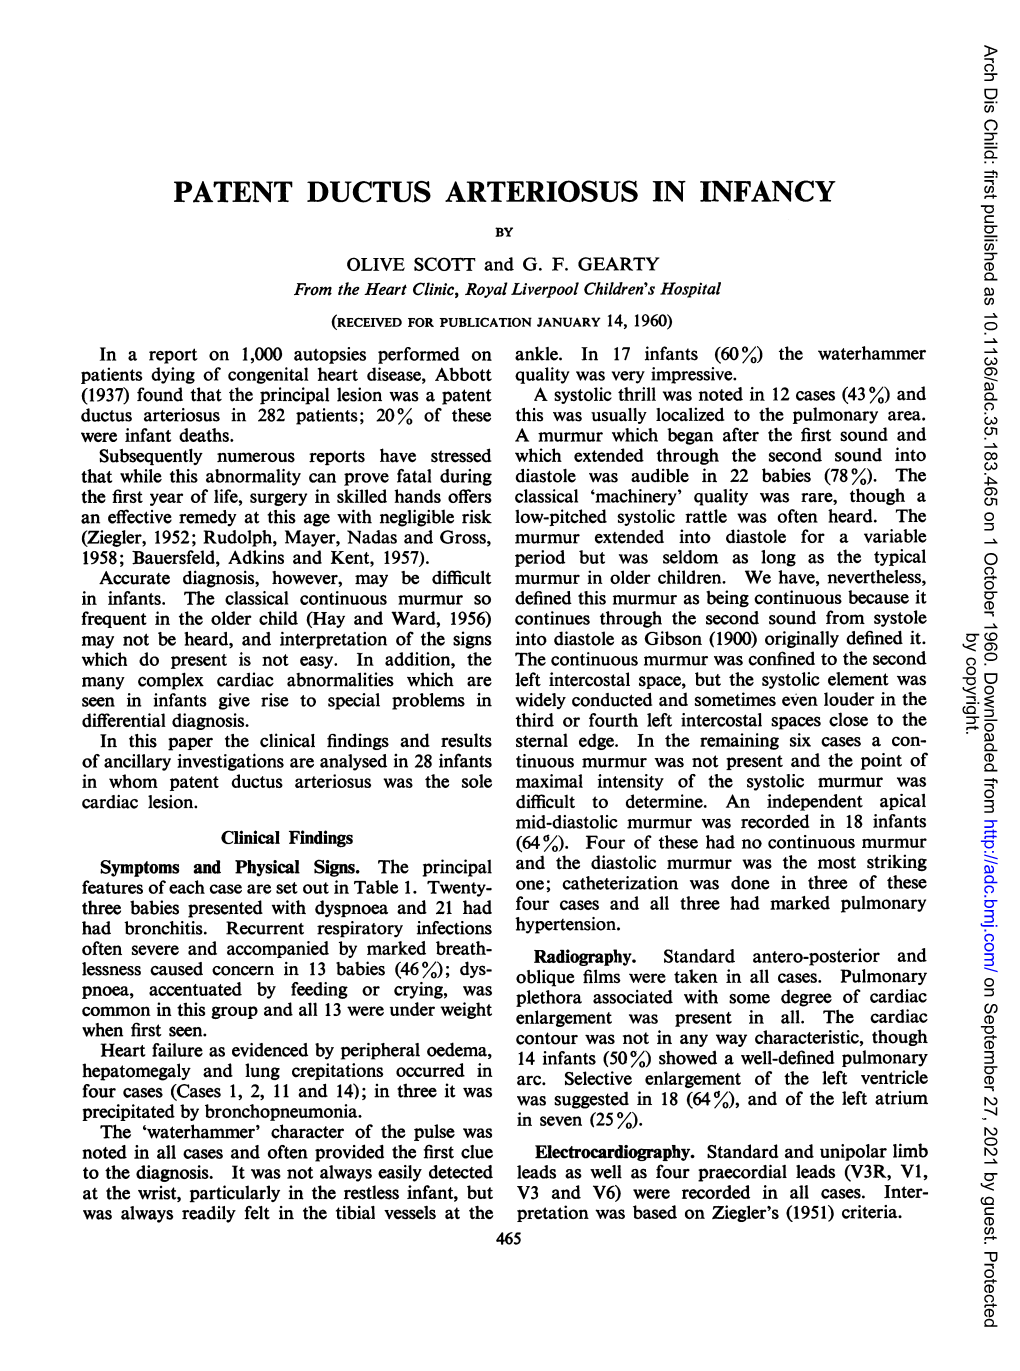 Patent Ductus Arteriosus in Infancy